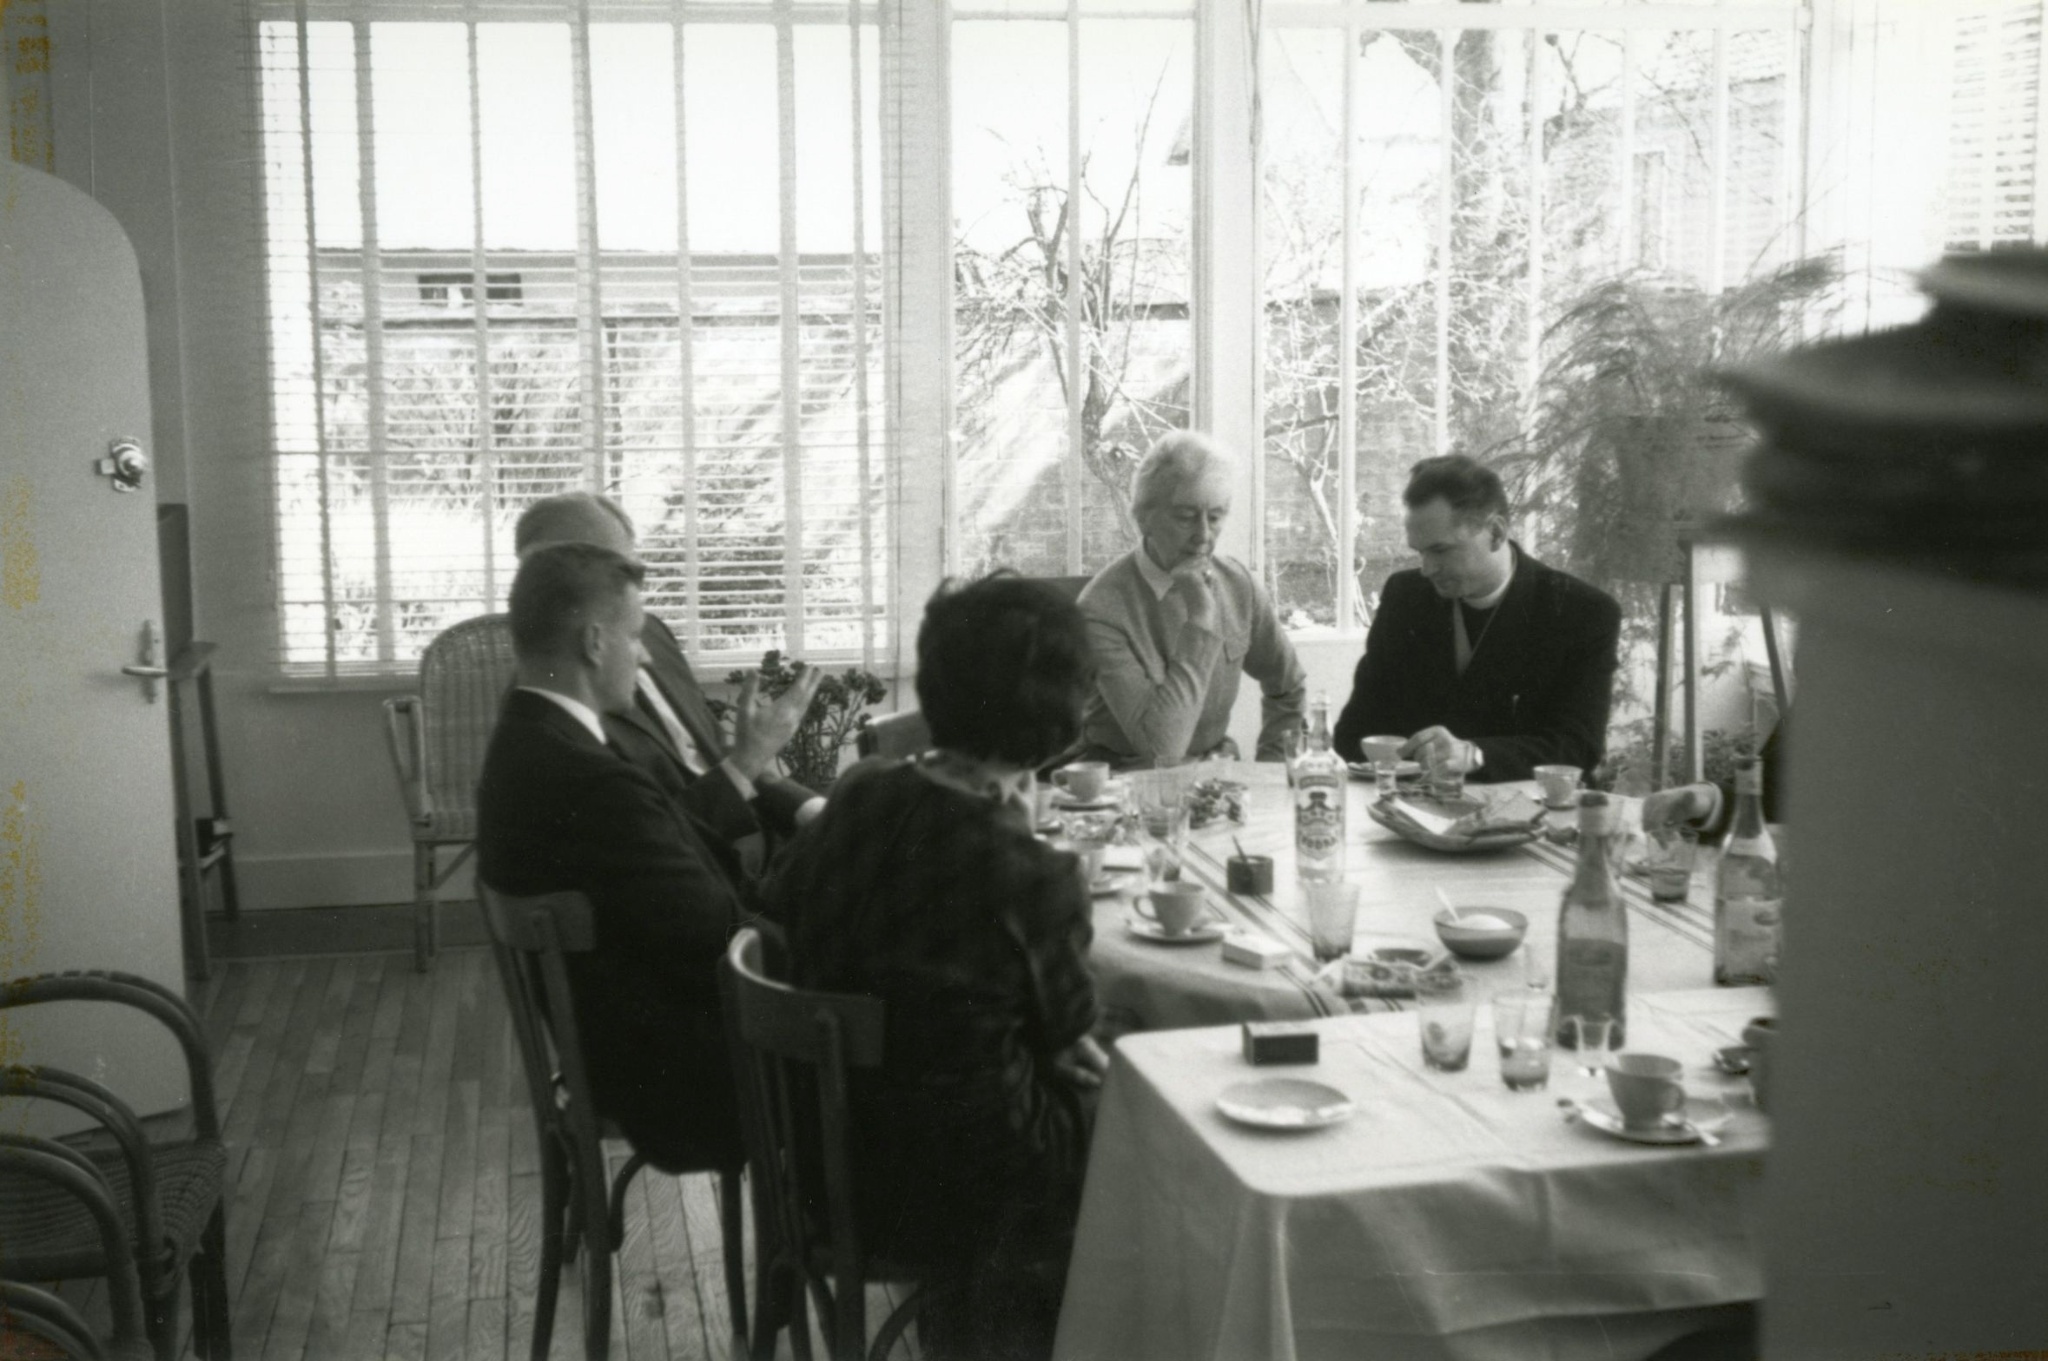  Пасха в 1963 году в Доме культуры. За столом сидят: Збигнев Бжезинский, Ежи Гедройц, Мария Гуттен-Чапская. fot: Henryk Giedroyc 